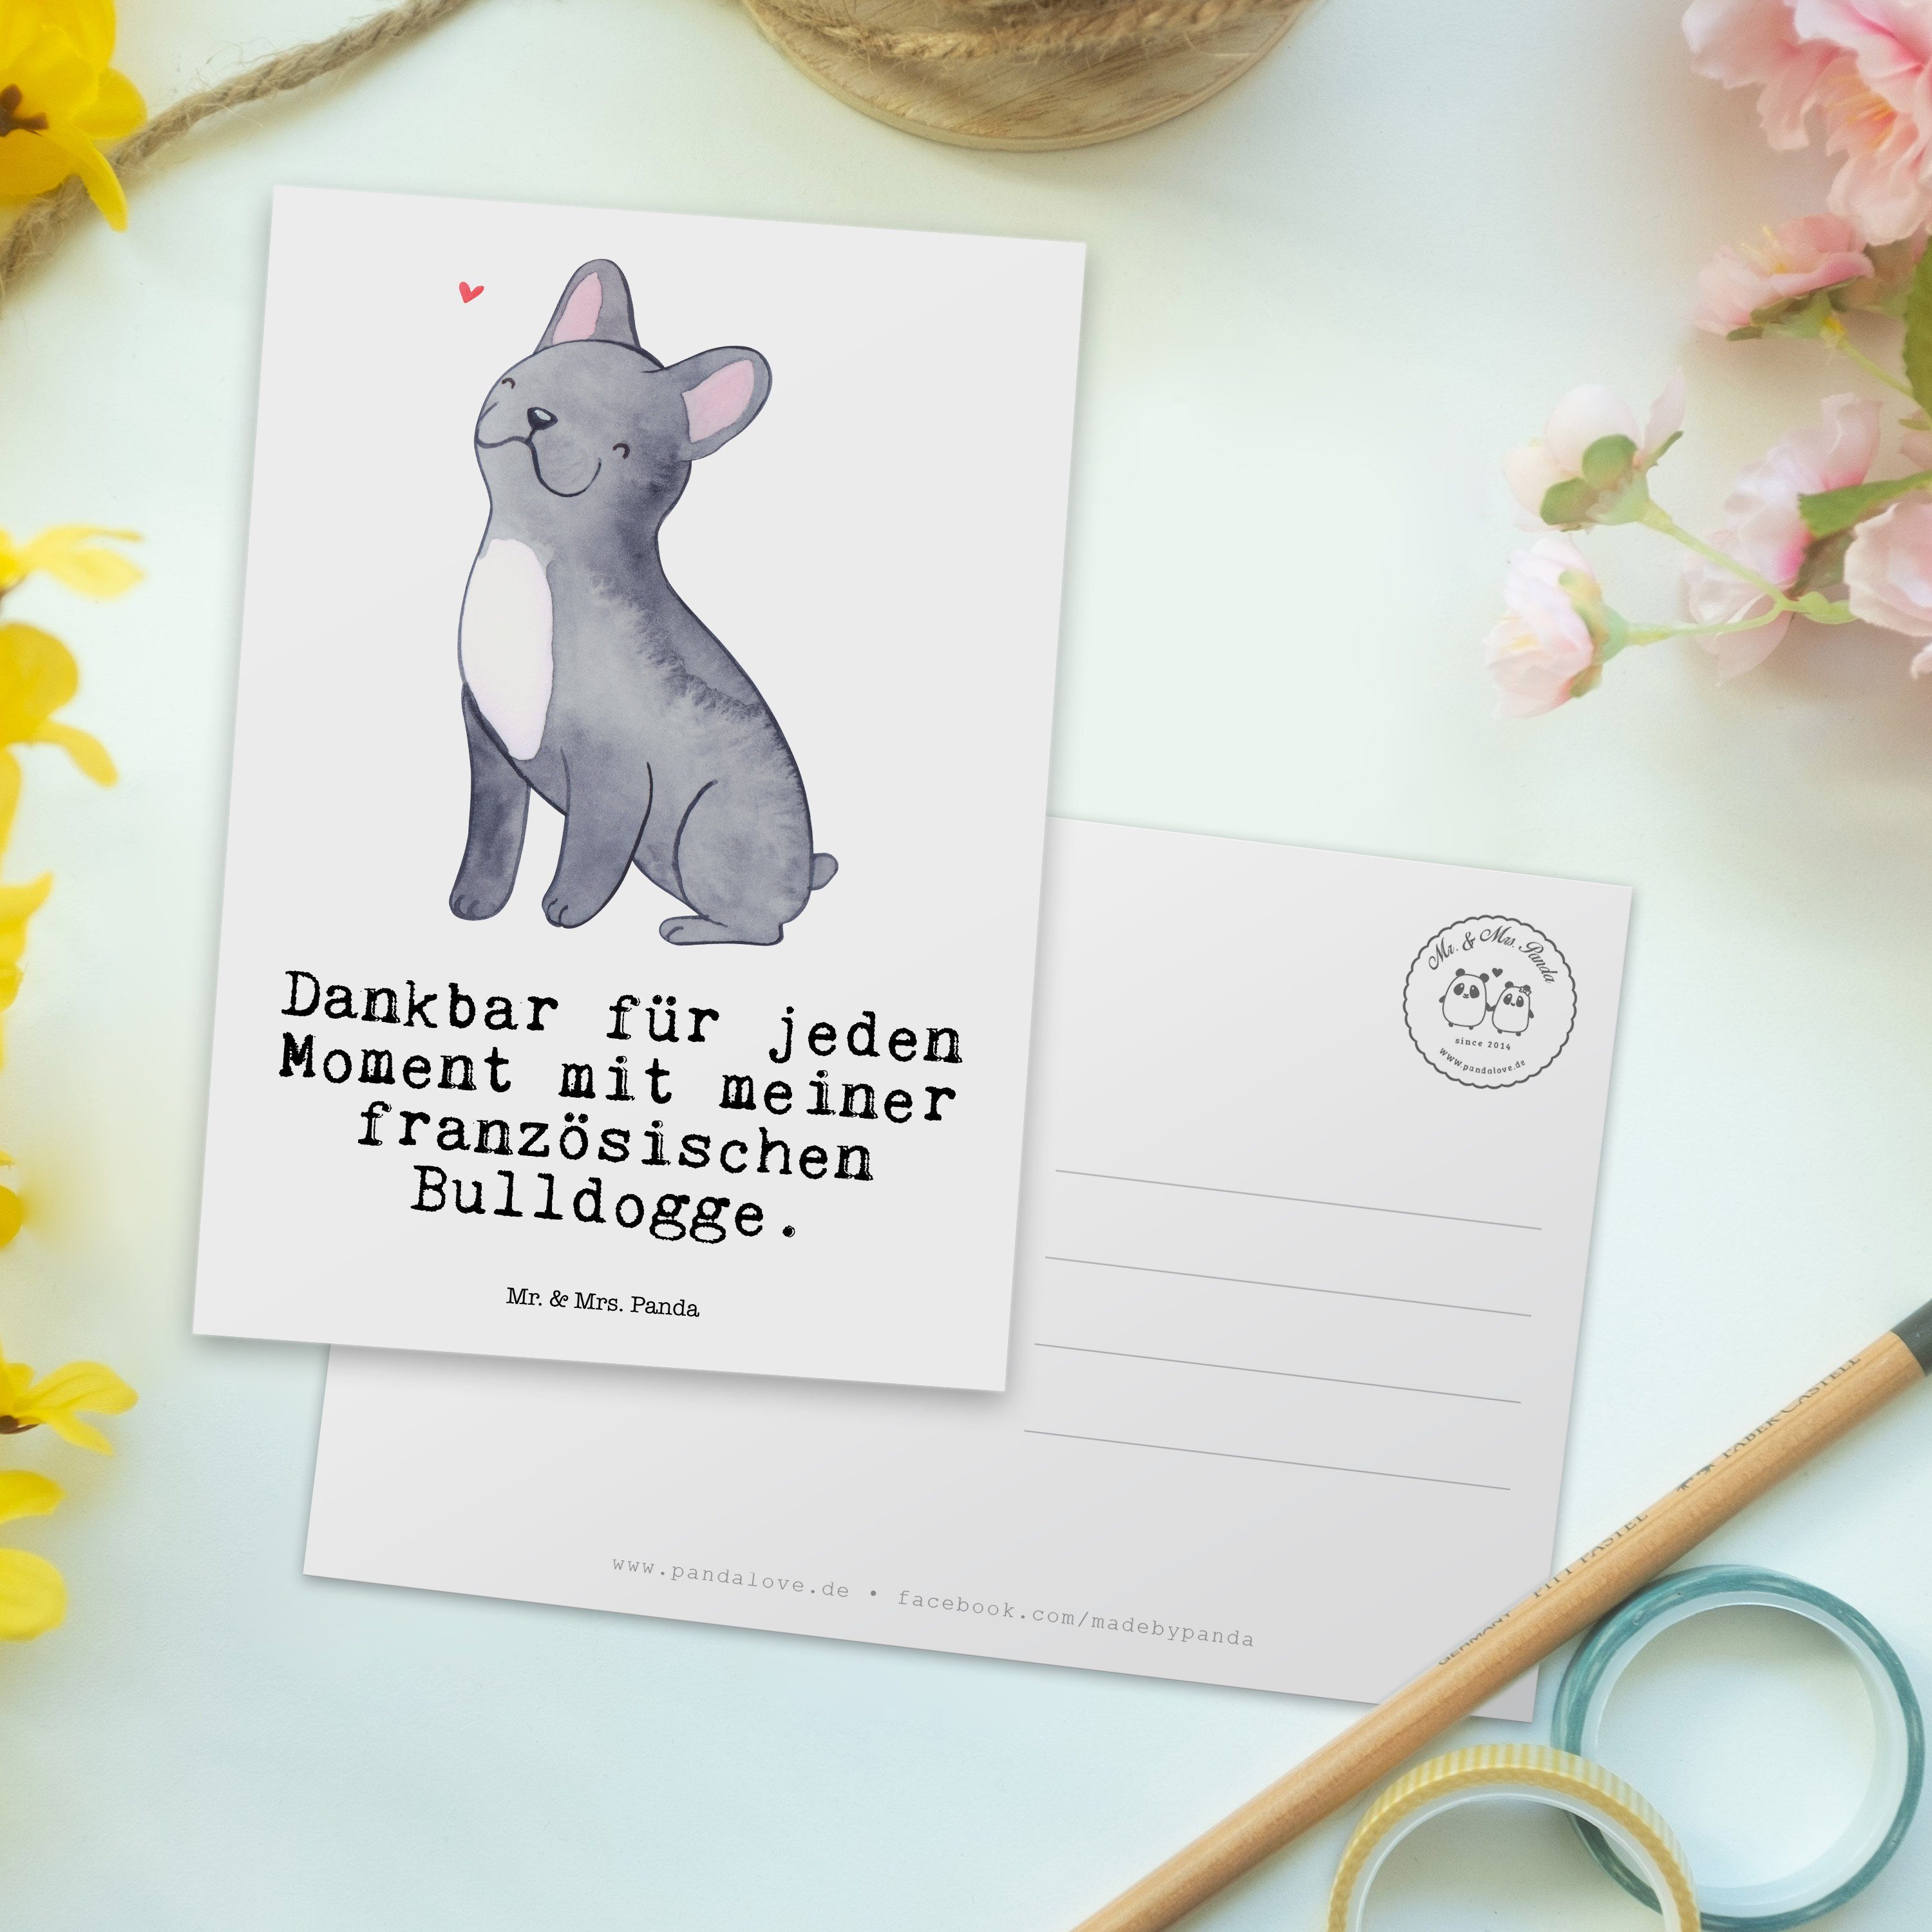 Mr. & Mrs. Panda Postkarte Geschenk, Dankeskarte, Weiß Bulldogge - Moment Karte Französische 